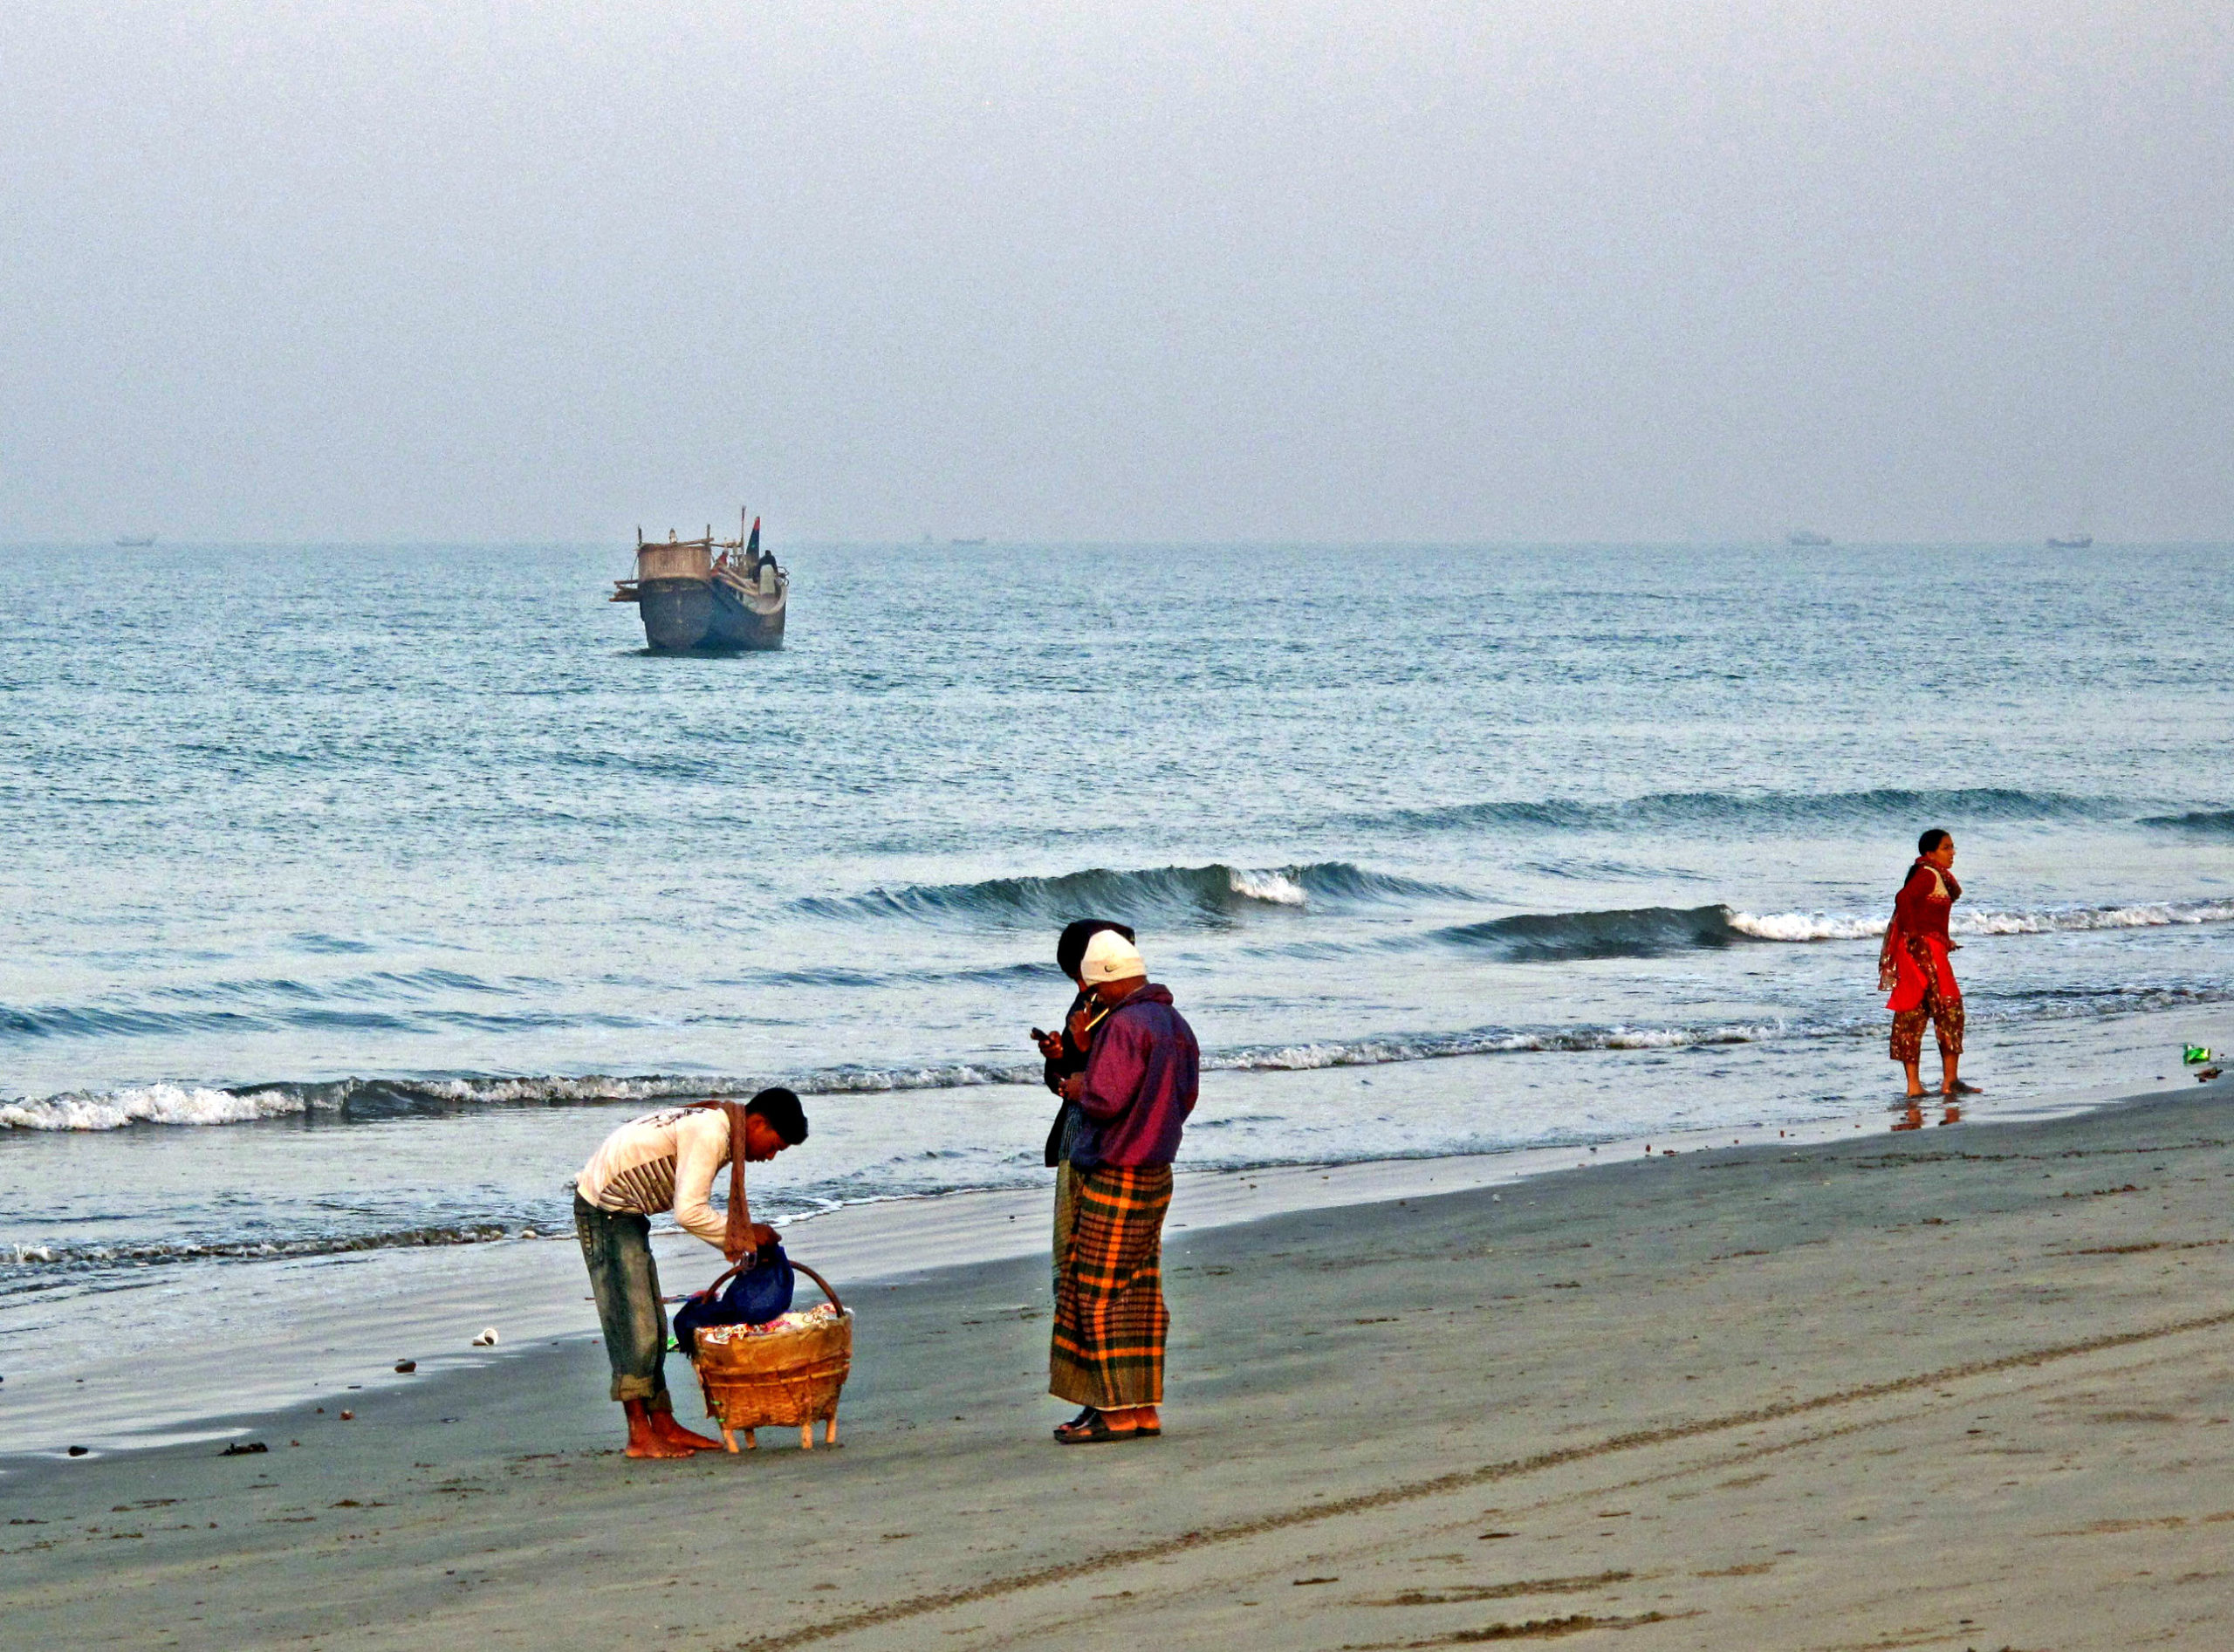 Бенгальский залив